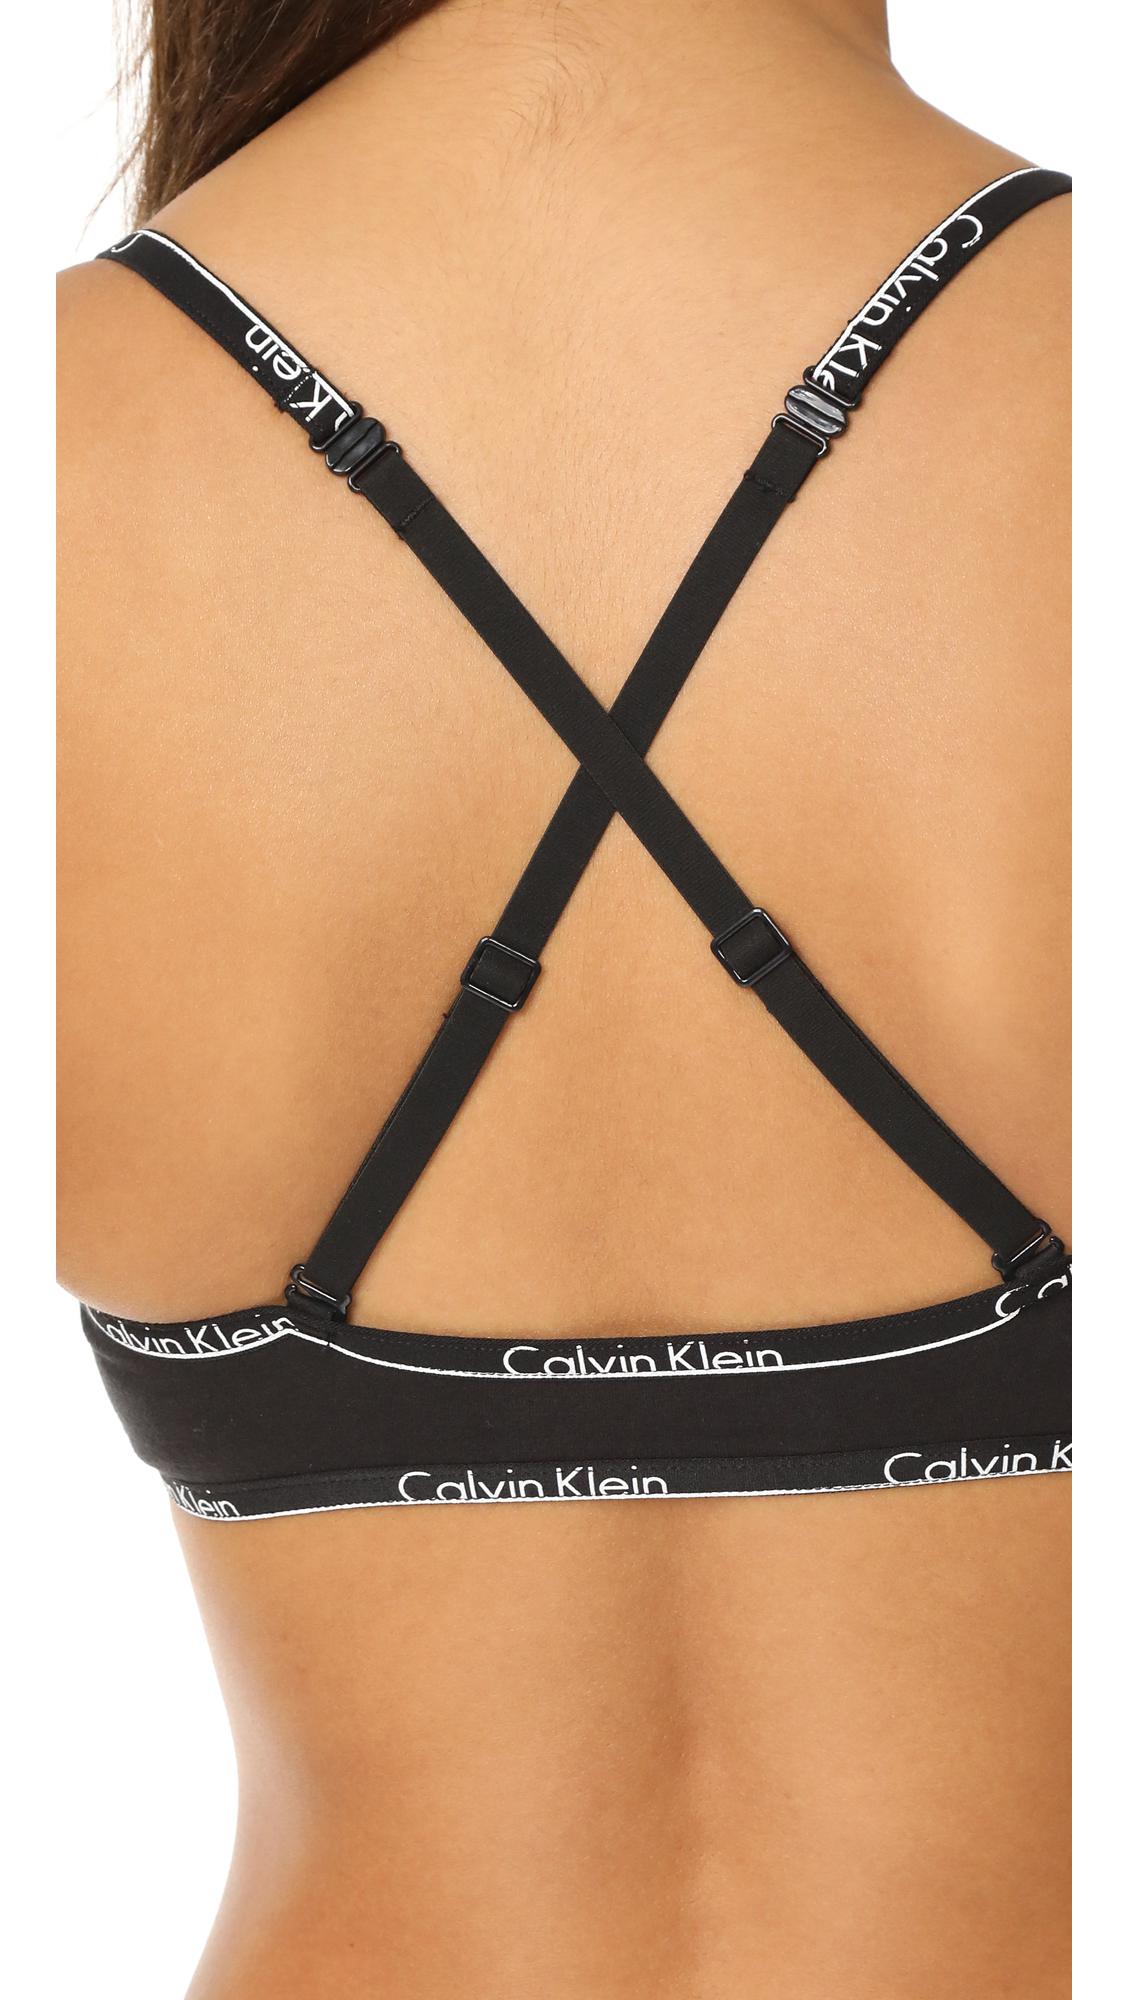 Buy Calvin Klein Underwear Unlined Triangle Bra - Black